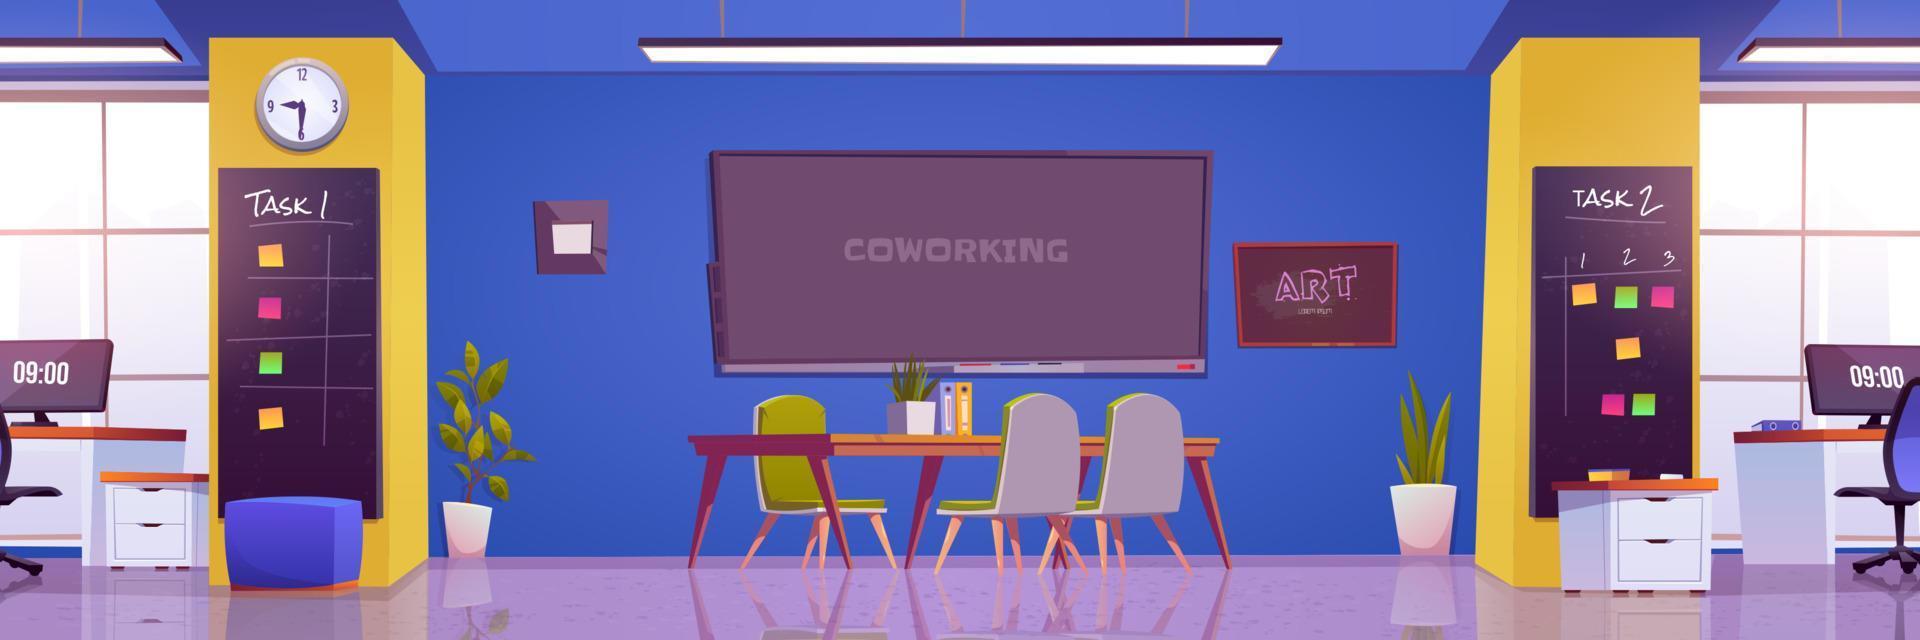 Coworking office, workplace interior, boardroom vector